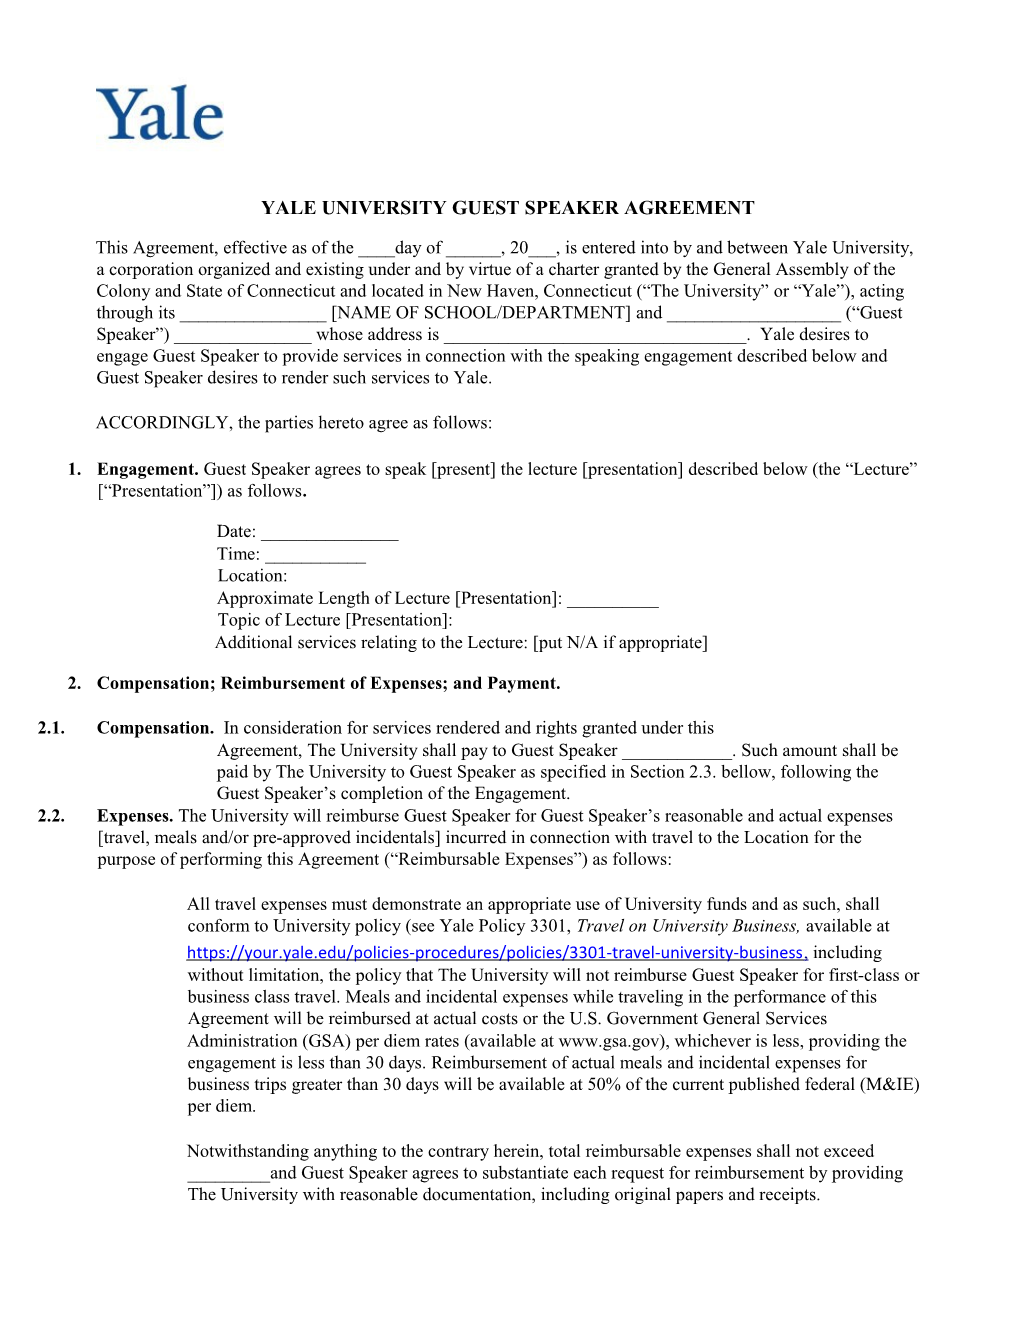 Yale University Guest Speaker Agreement